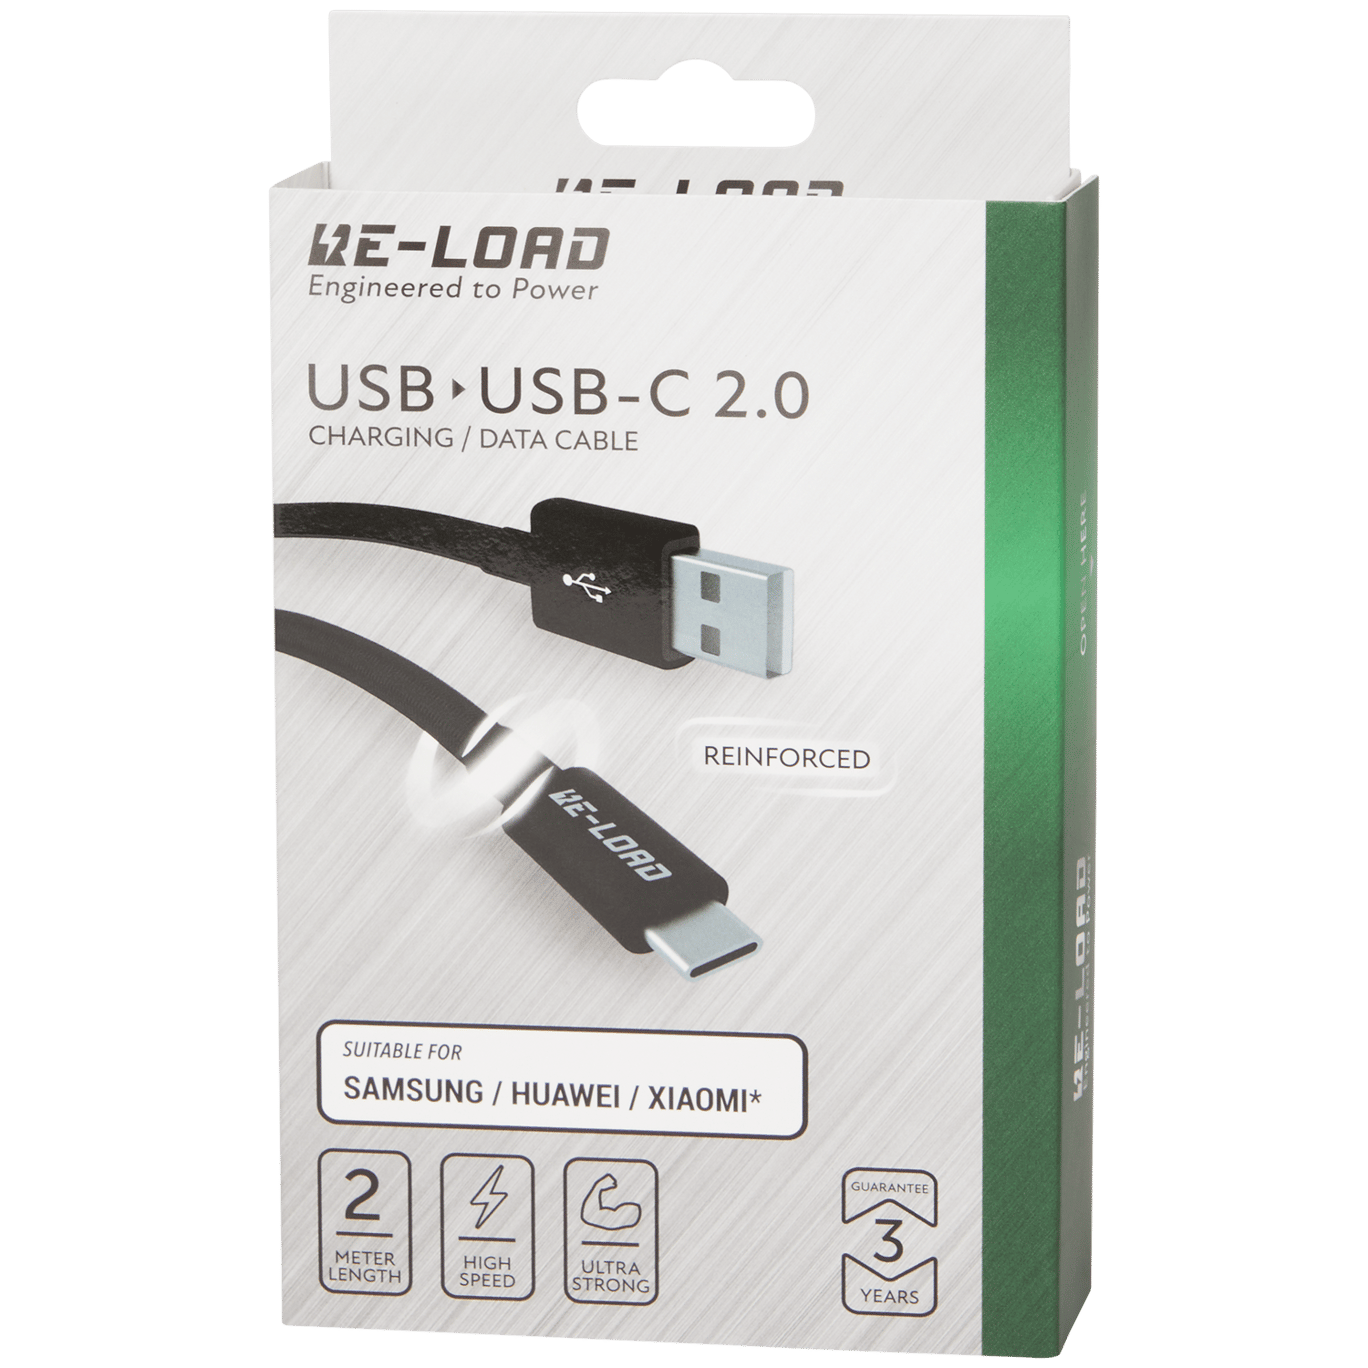 Dollar Oorzaak douche Re-load USB-A naar USB-C kabel | Action.com